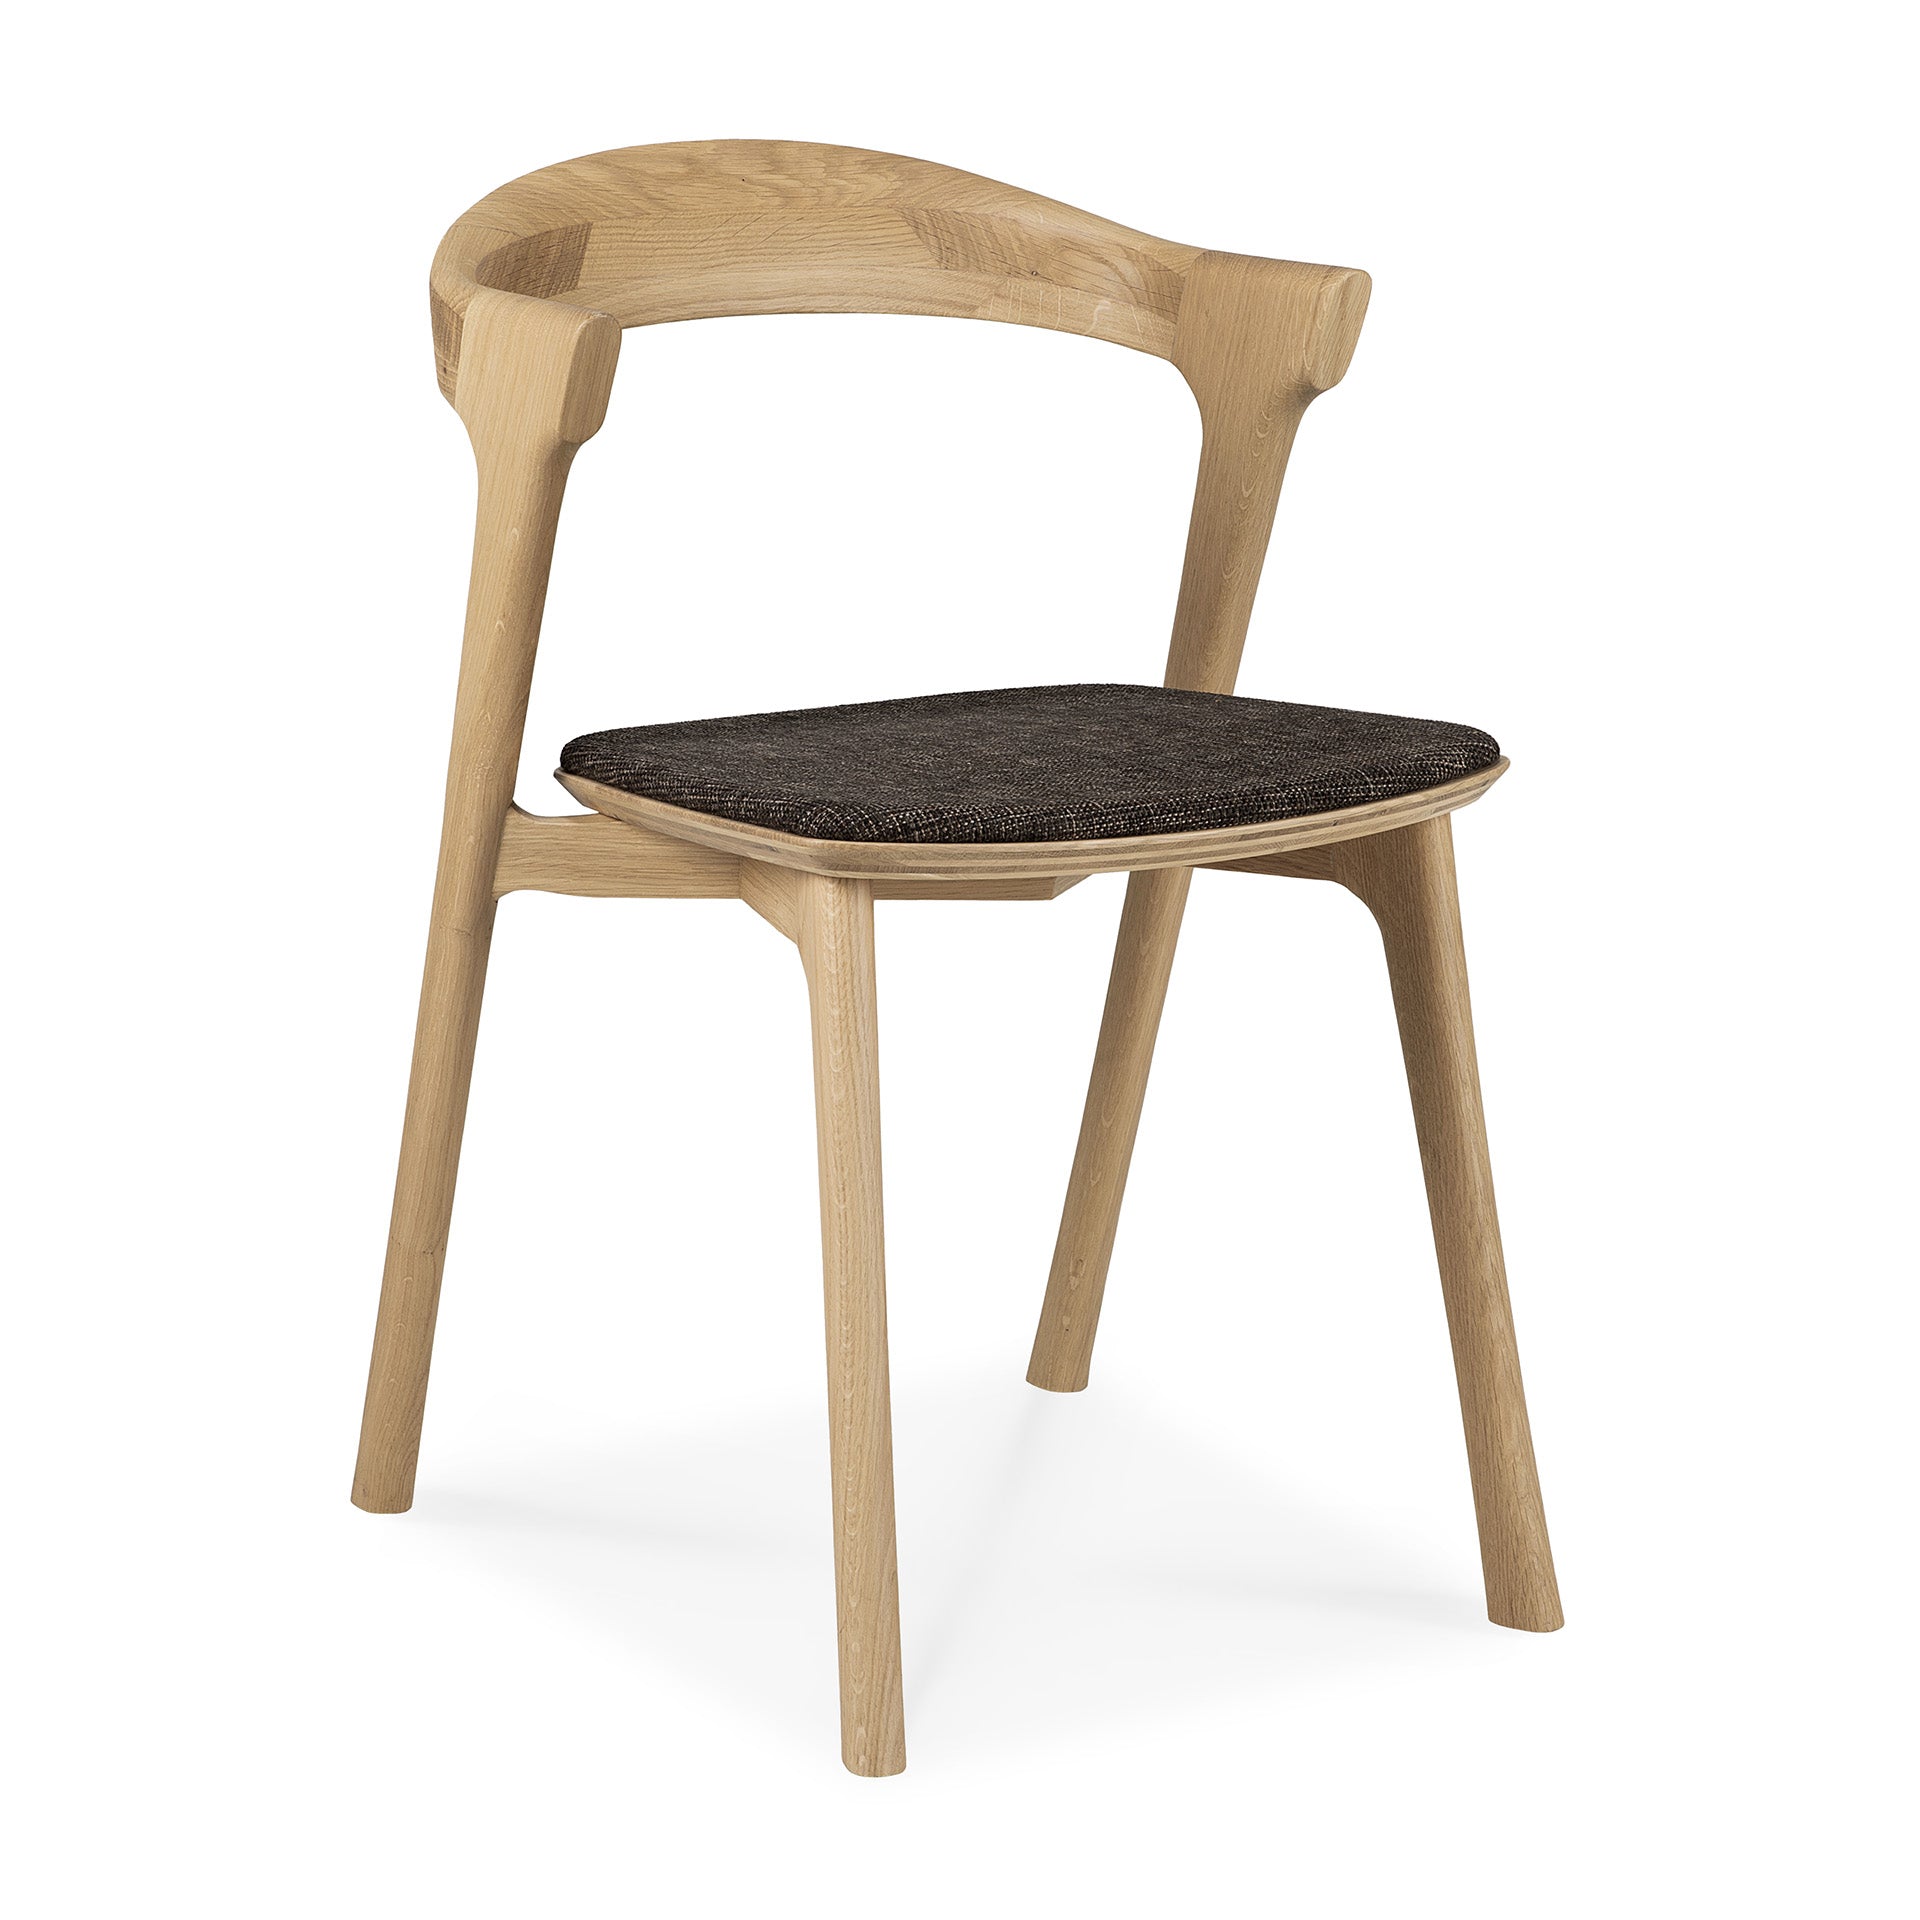 比利時原裝進口實木傢俬 - 座椅系列 - Bok系列橡木餐椅